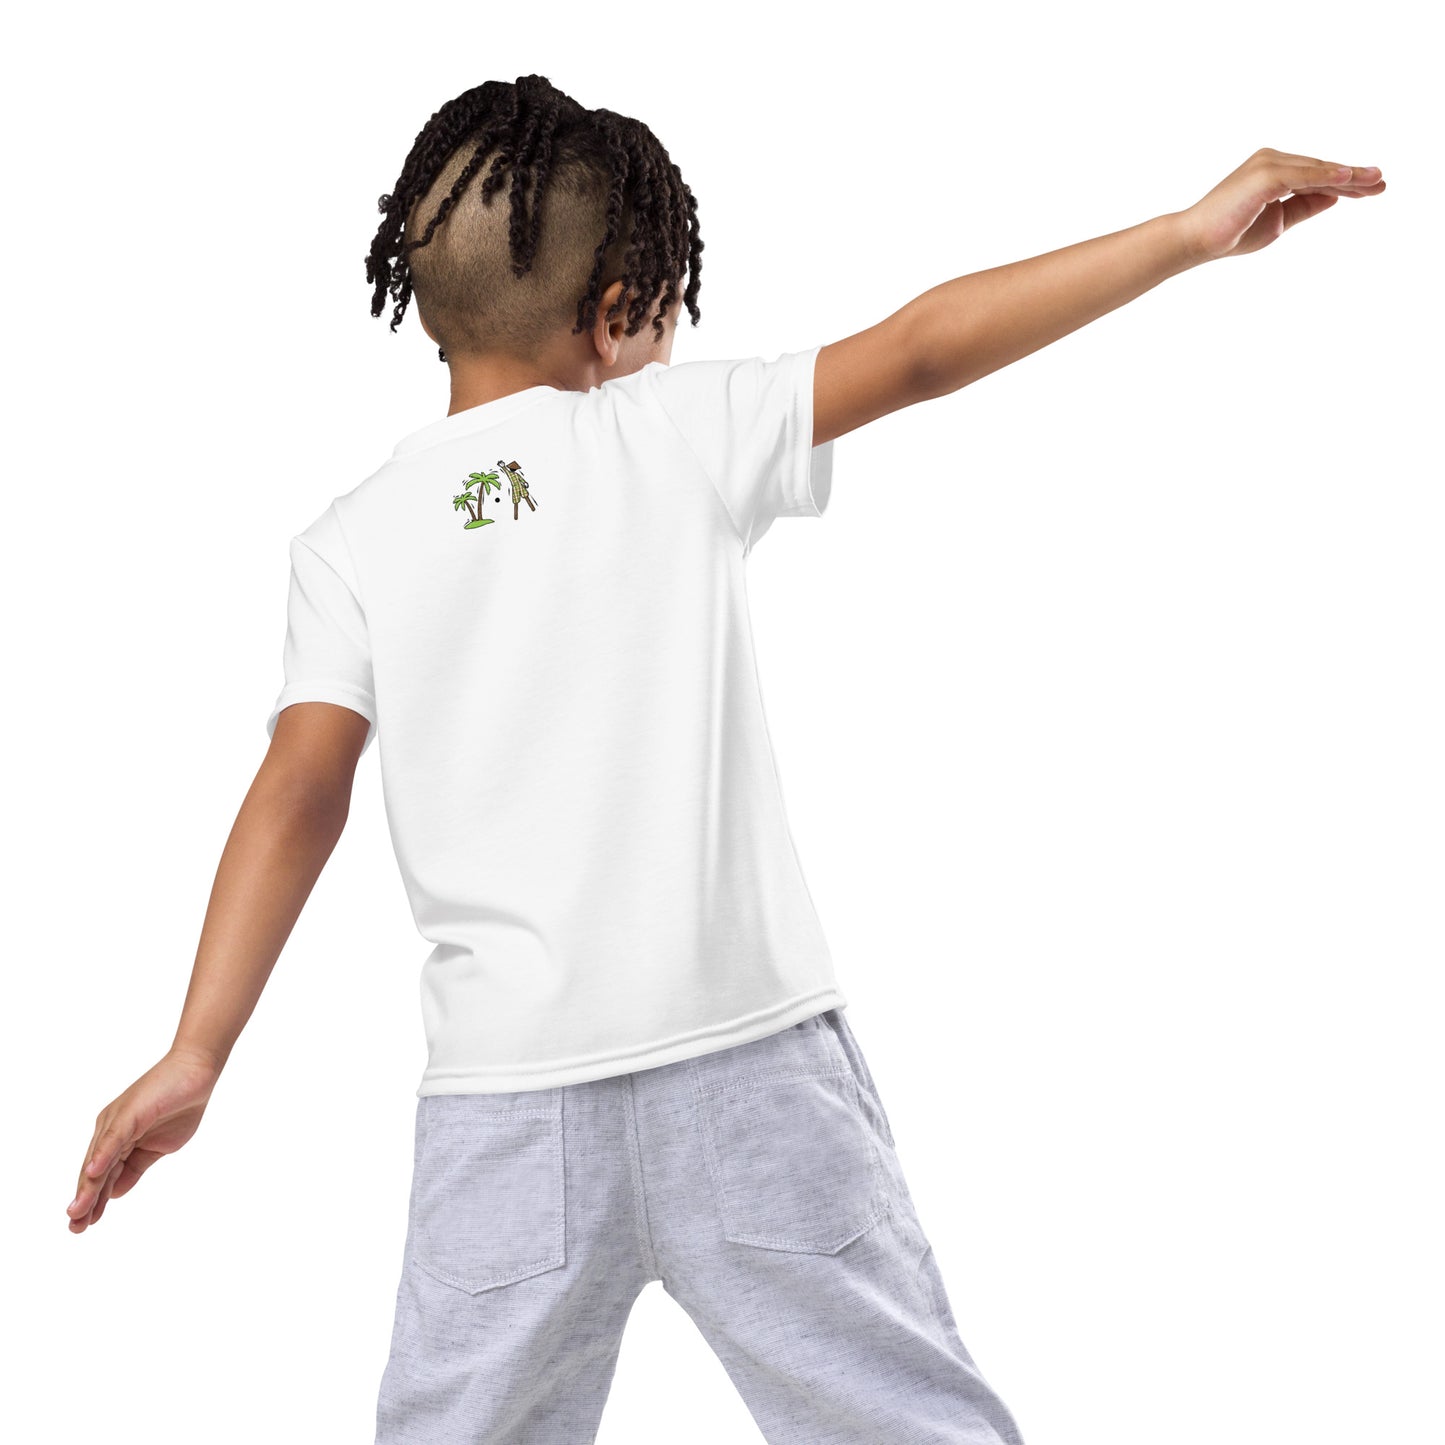 White V.Localized (Regular) Dry-Fit Kids T-Shirt